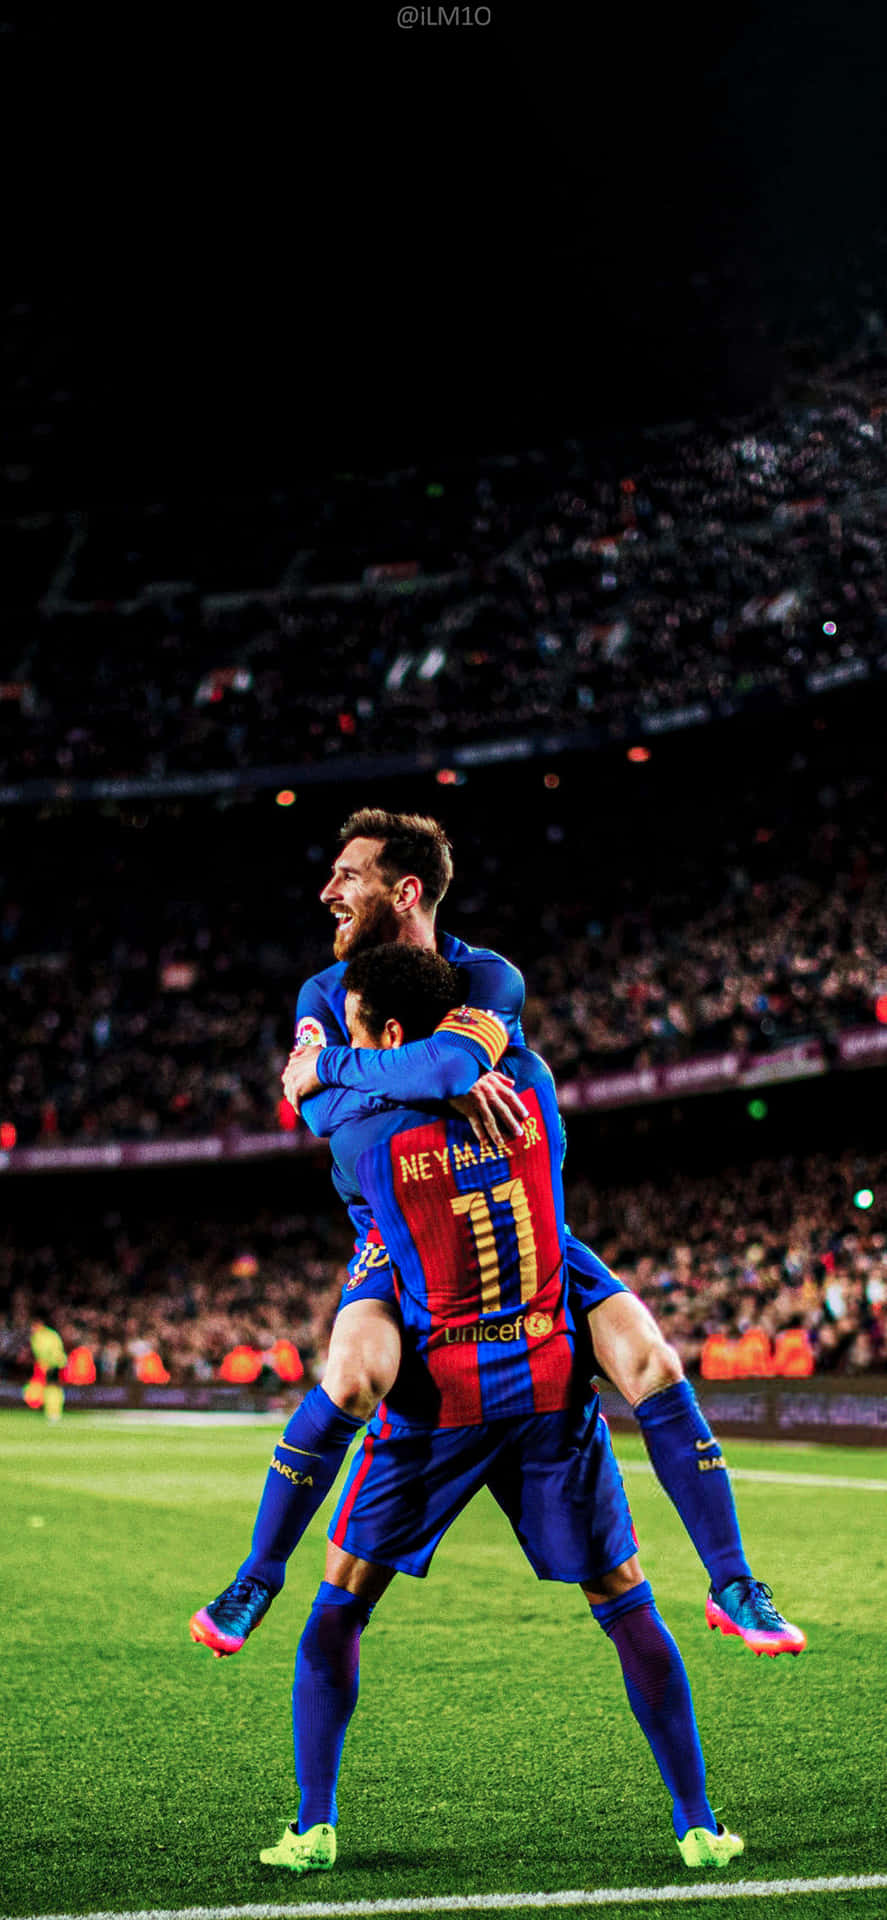 Messi và Neymar là hai cầu thủ bóng đá nổi tiếng nhất thế giới, được rất nhiều người yêu mến và hâm mộ. Chỉ với những hình ảnh đẹp liên quan đến hai ngôi sao này, bạn đã có thể tận hưởng một không khí đầy sắc màu và cảm nhận được sức hút của họ. Hãy xem và tải về những bức ảnh nền bóng đá hoàn hảo về Messi và Neymar để trang trí cho điện thoại của bạn.